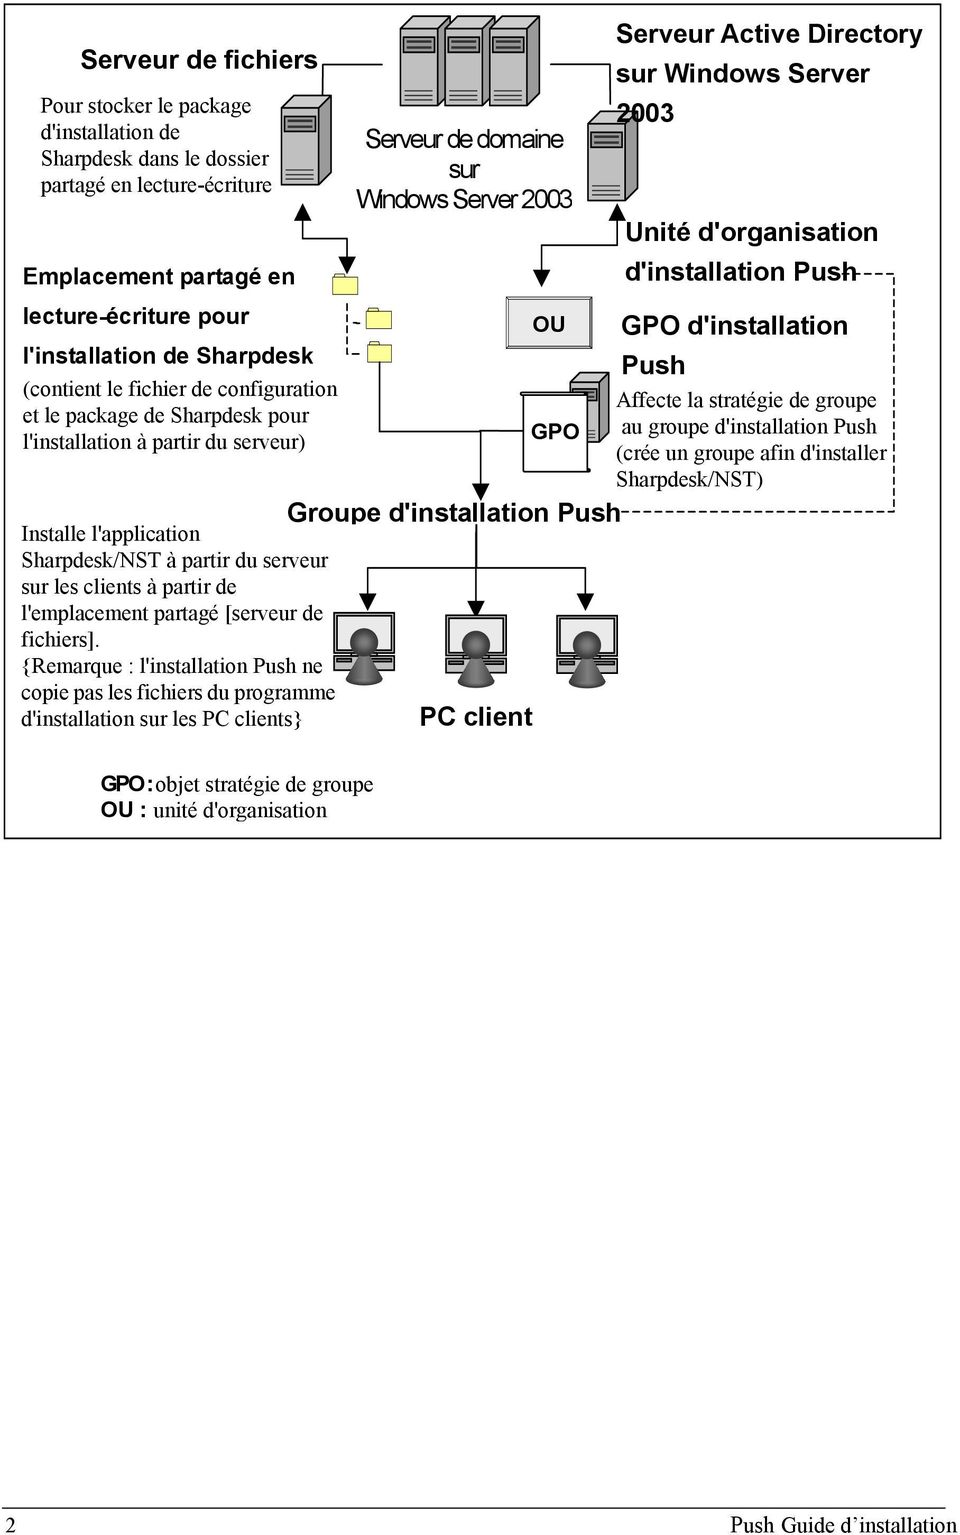 la stratégie de groupe et le package de Sharpdesk pour au groupe d'installation Push l'installation à partir du serveur) GPO (crée un groupe afin d'installer Sharpdesk/NST) Groupe d'installation Push